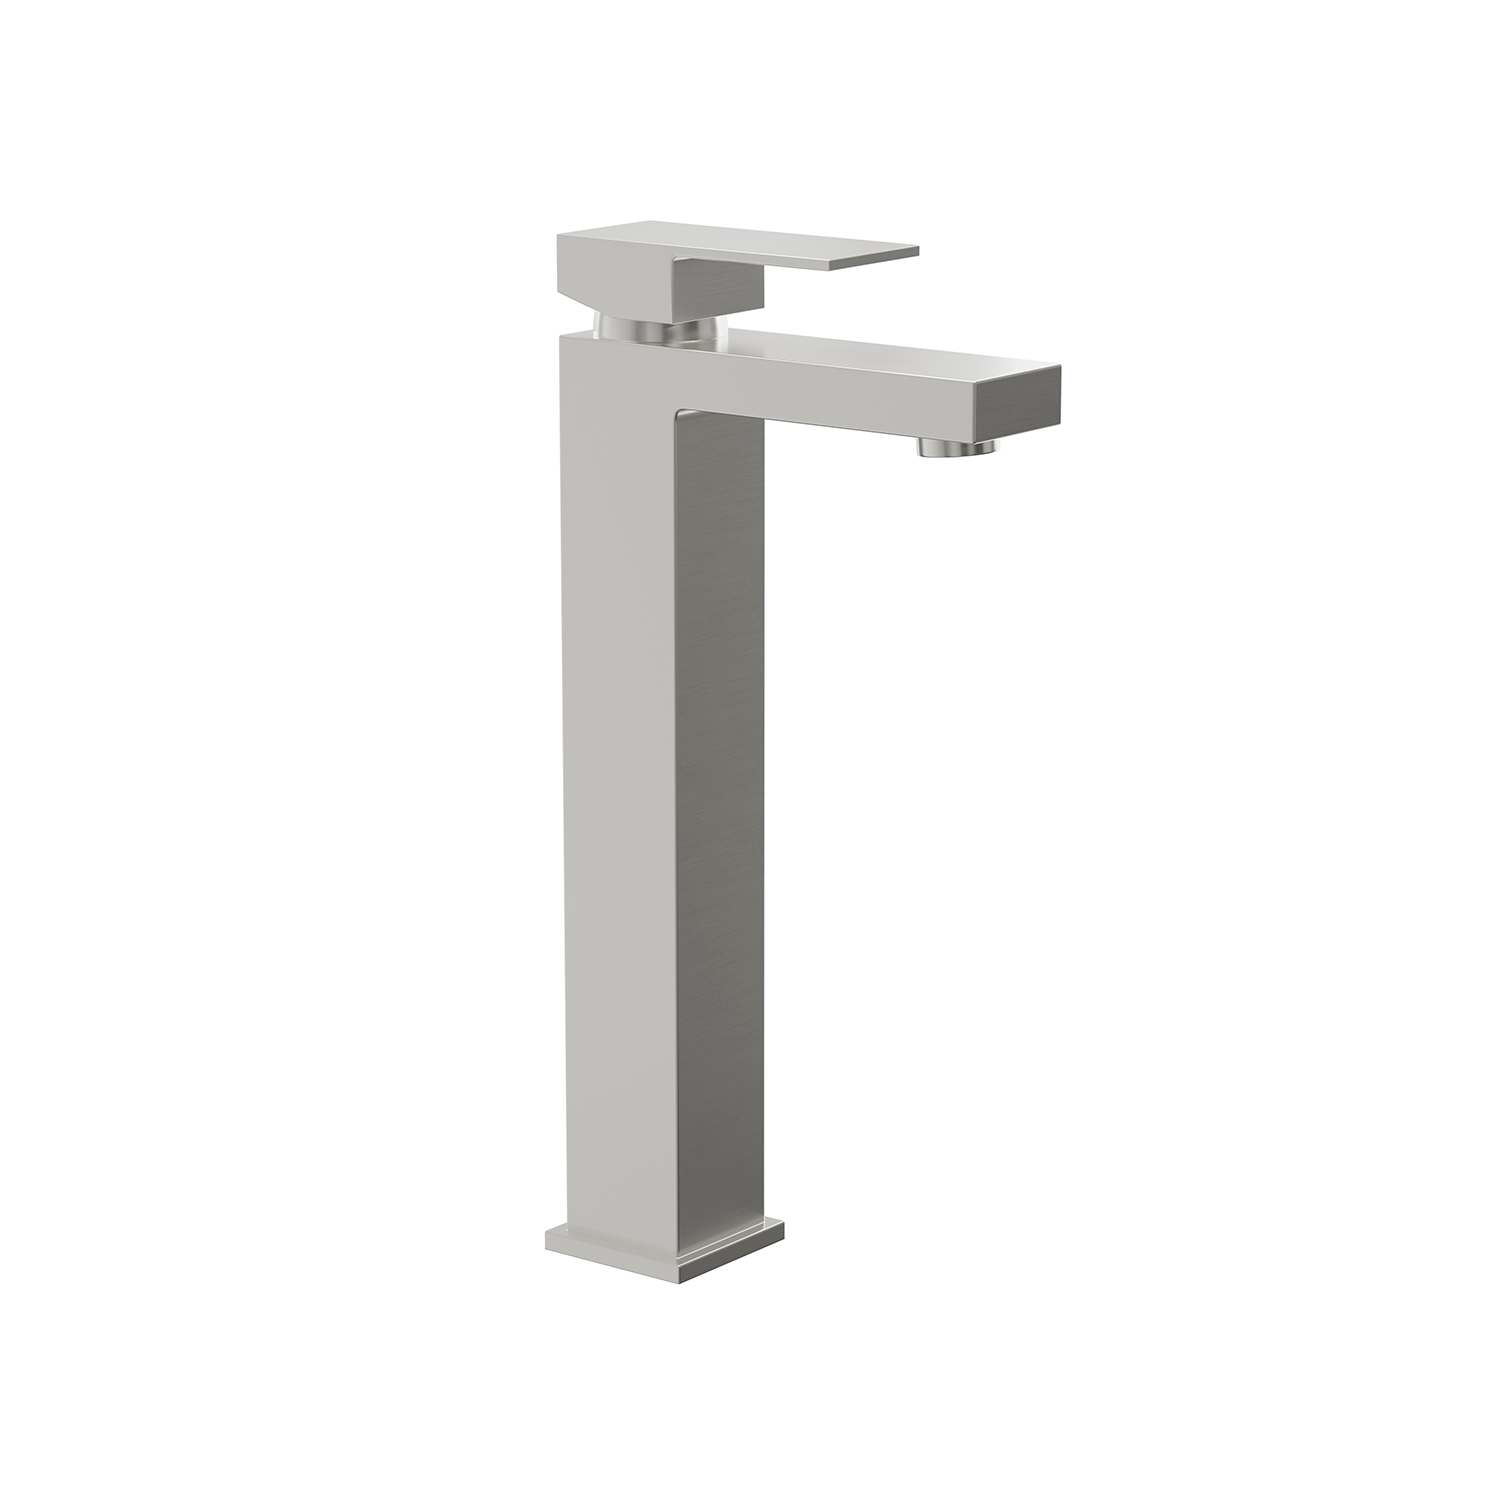 DAX Single Handle Vessel Sink Bathroom Faucet, Brass Body, 6-1/2 x 12 Inches (DAX-6951B)